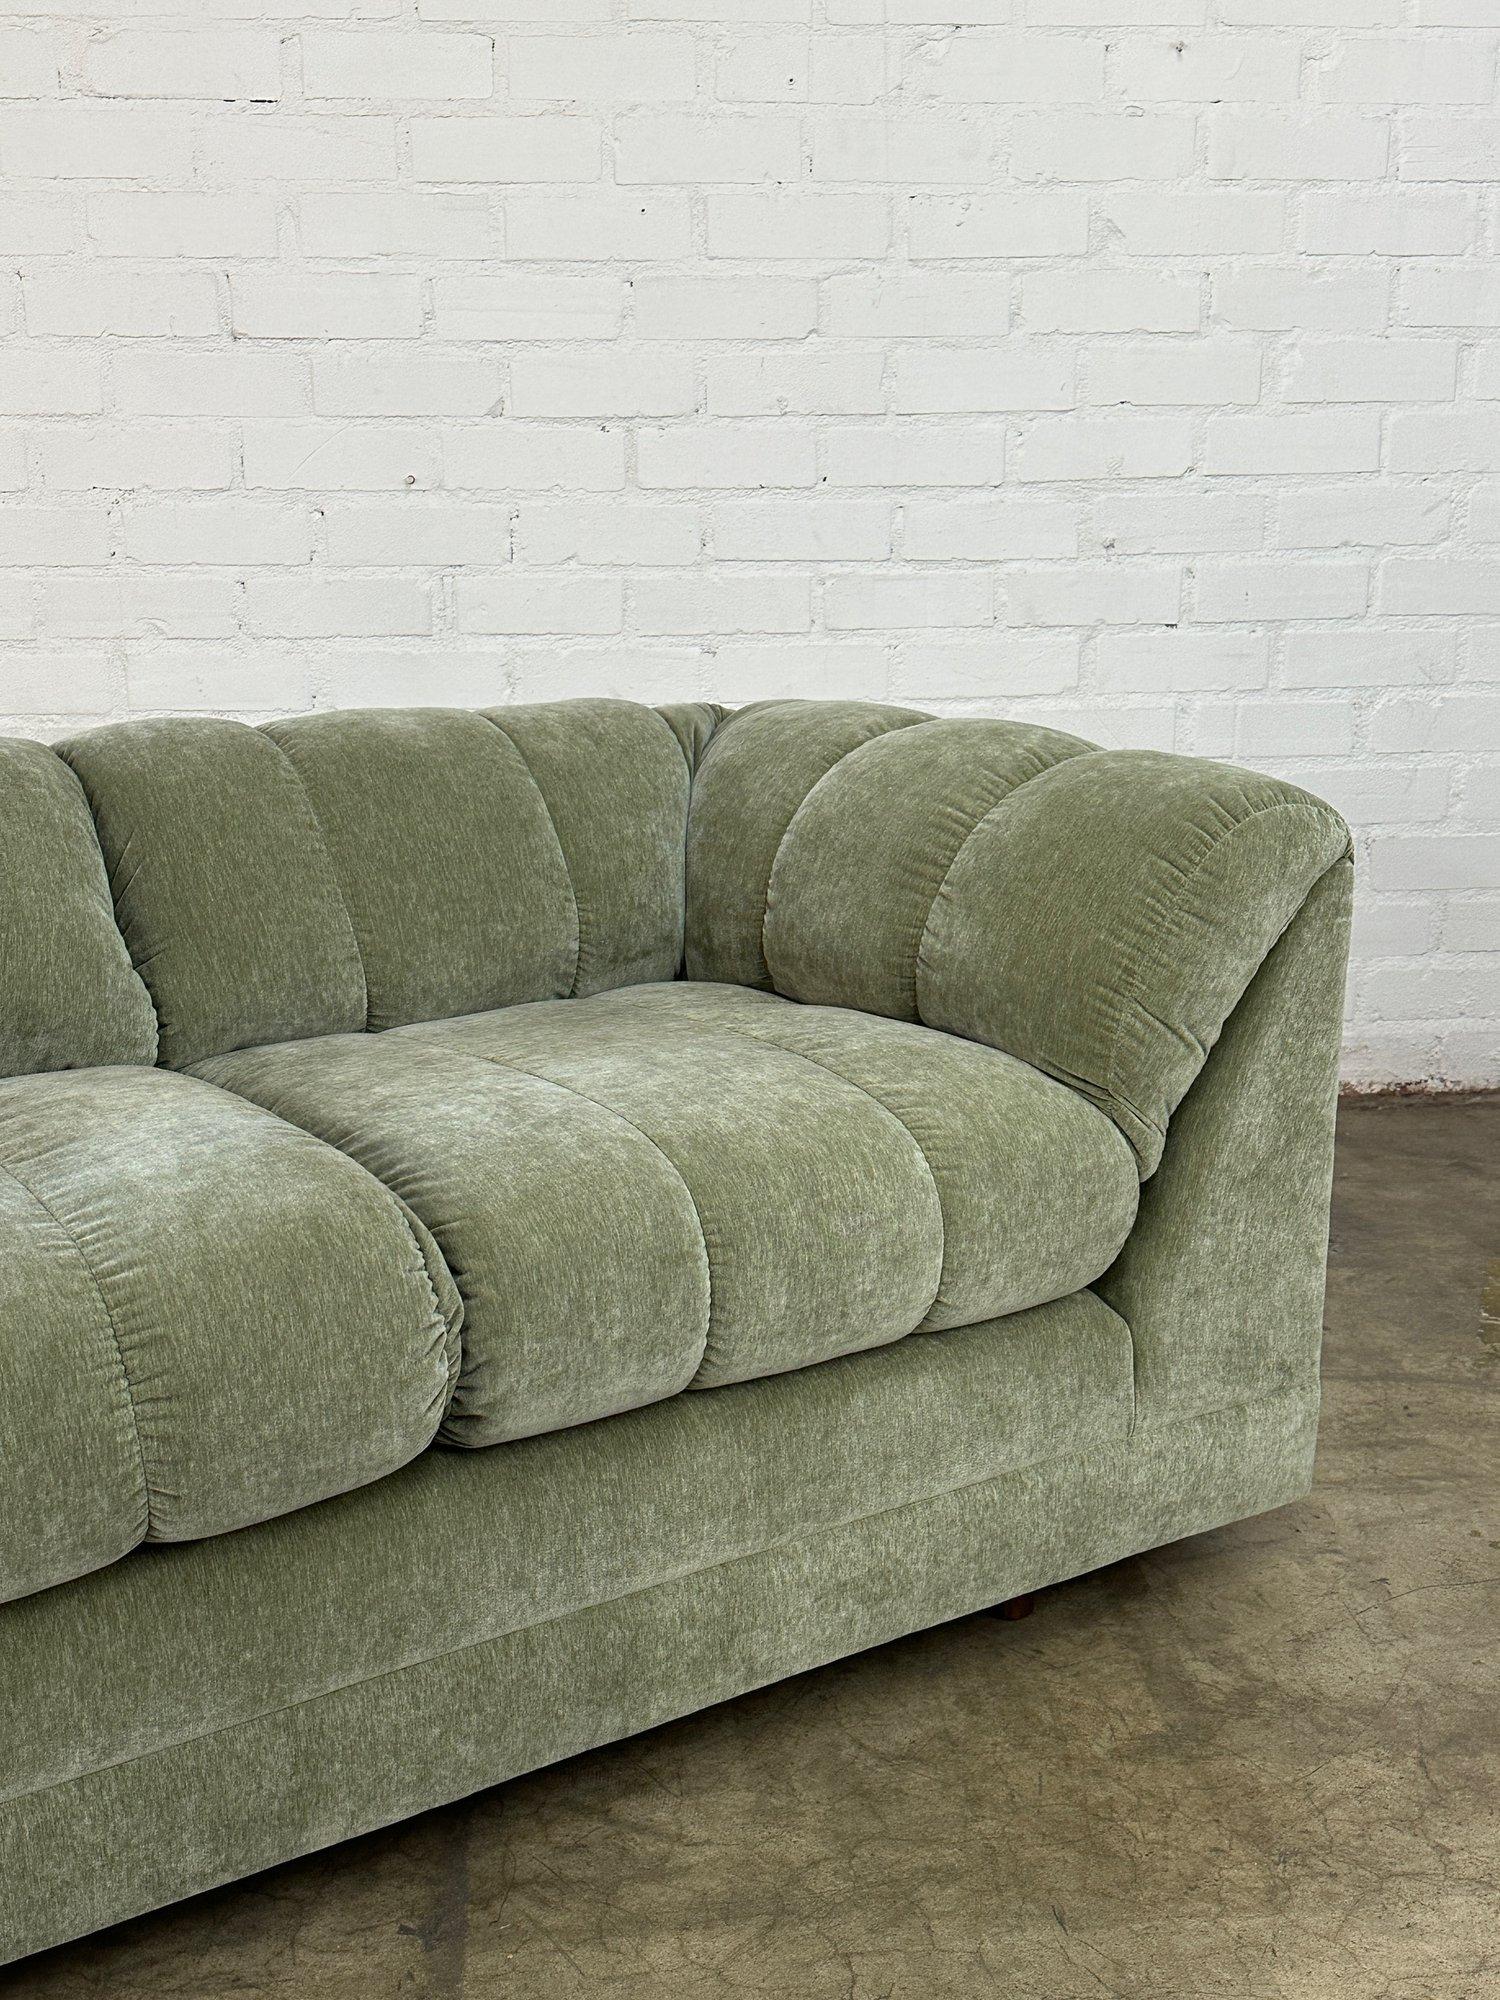 W70 D34.25 H29 SW46 SD25 SH20 AH28.5

Vollständig restauriertes Vintage-Sofa mit Kanaltufting in gedämpftem Grün. Der Artikel hat einen frischen Schaumstoff und einen weichen Chenille-Stoff. Der Artikel steht auf Rollen und lässt sich leicht